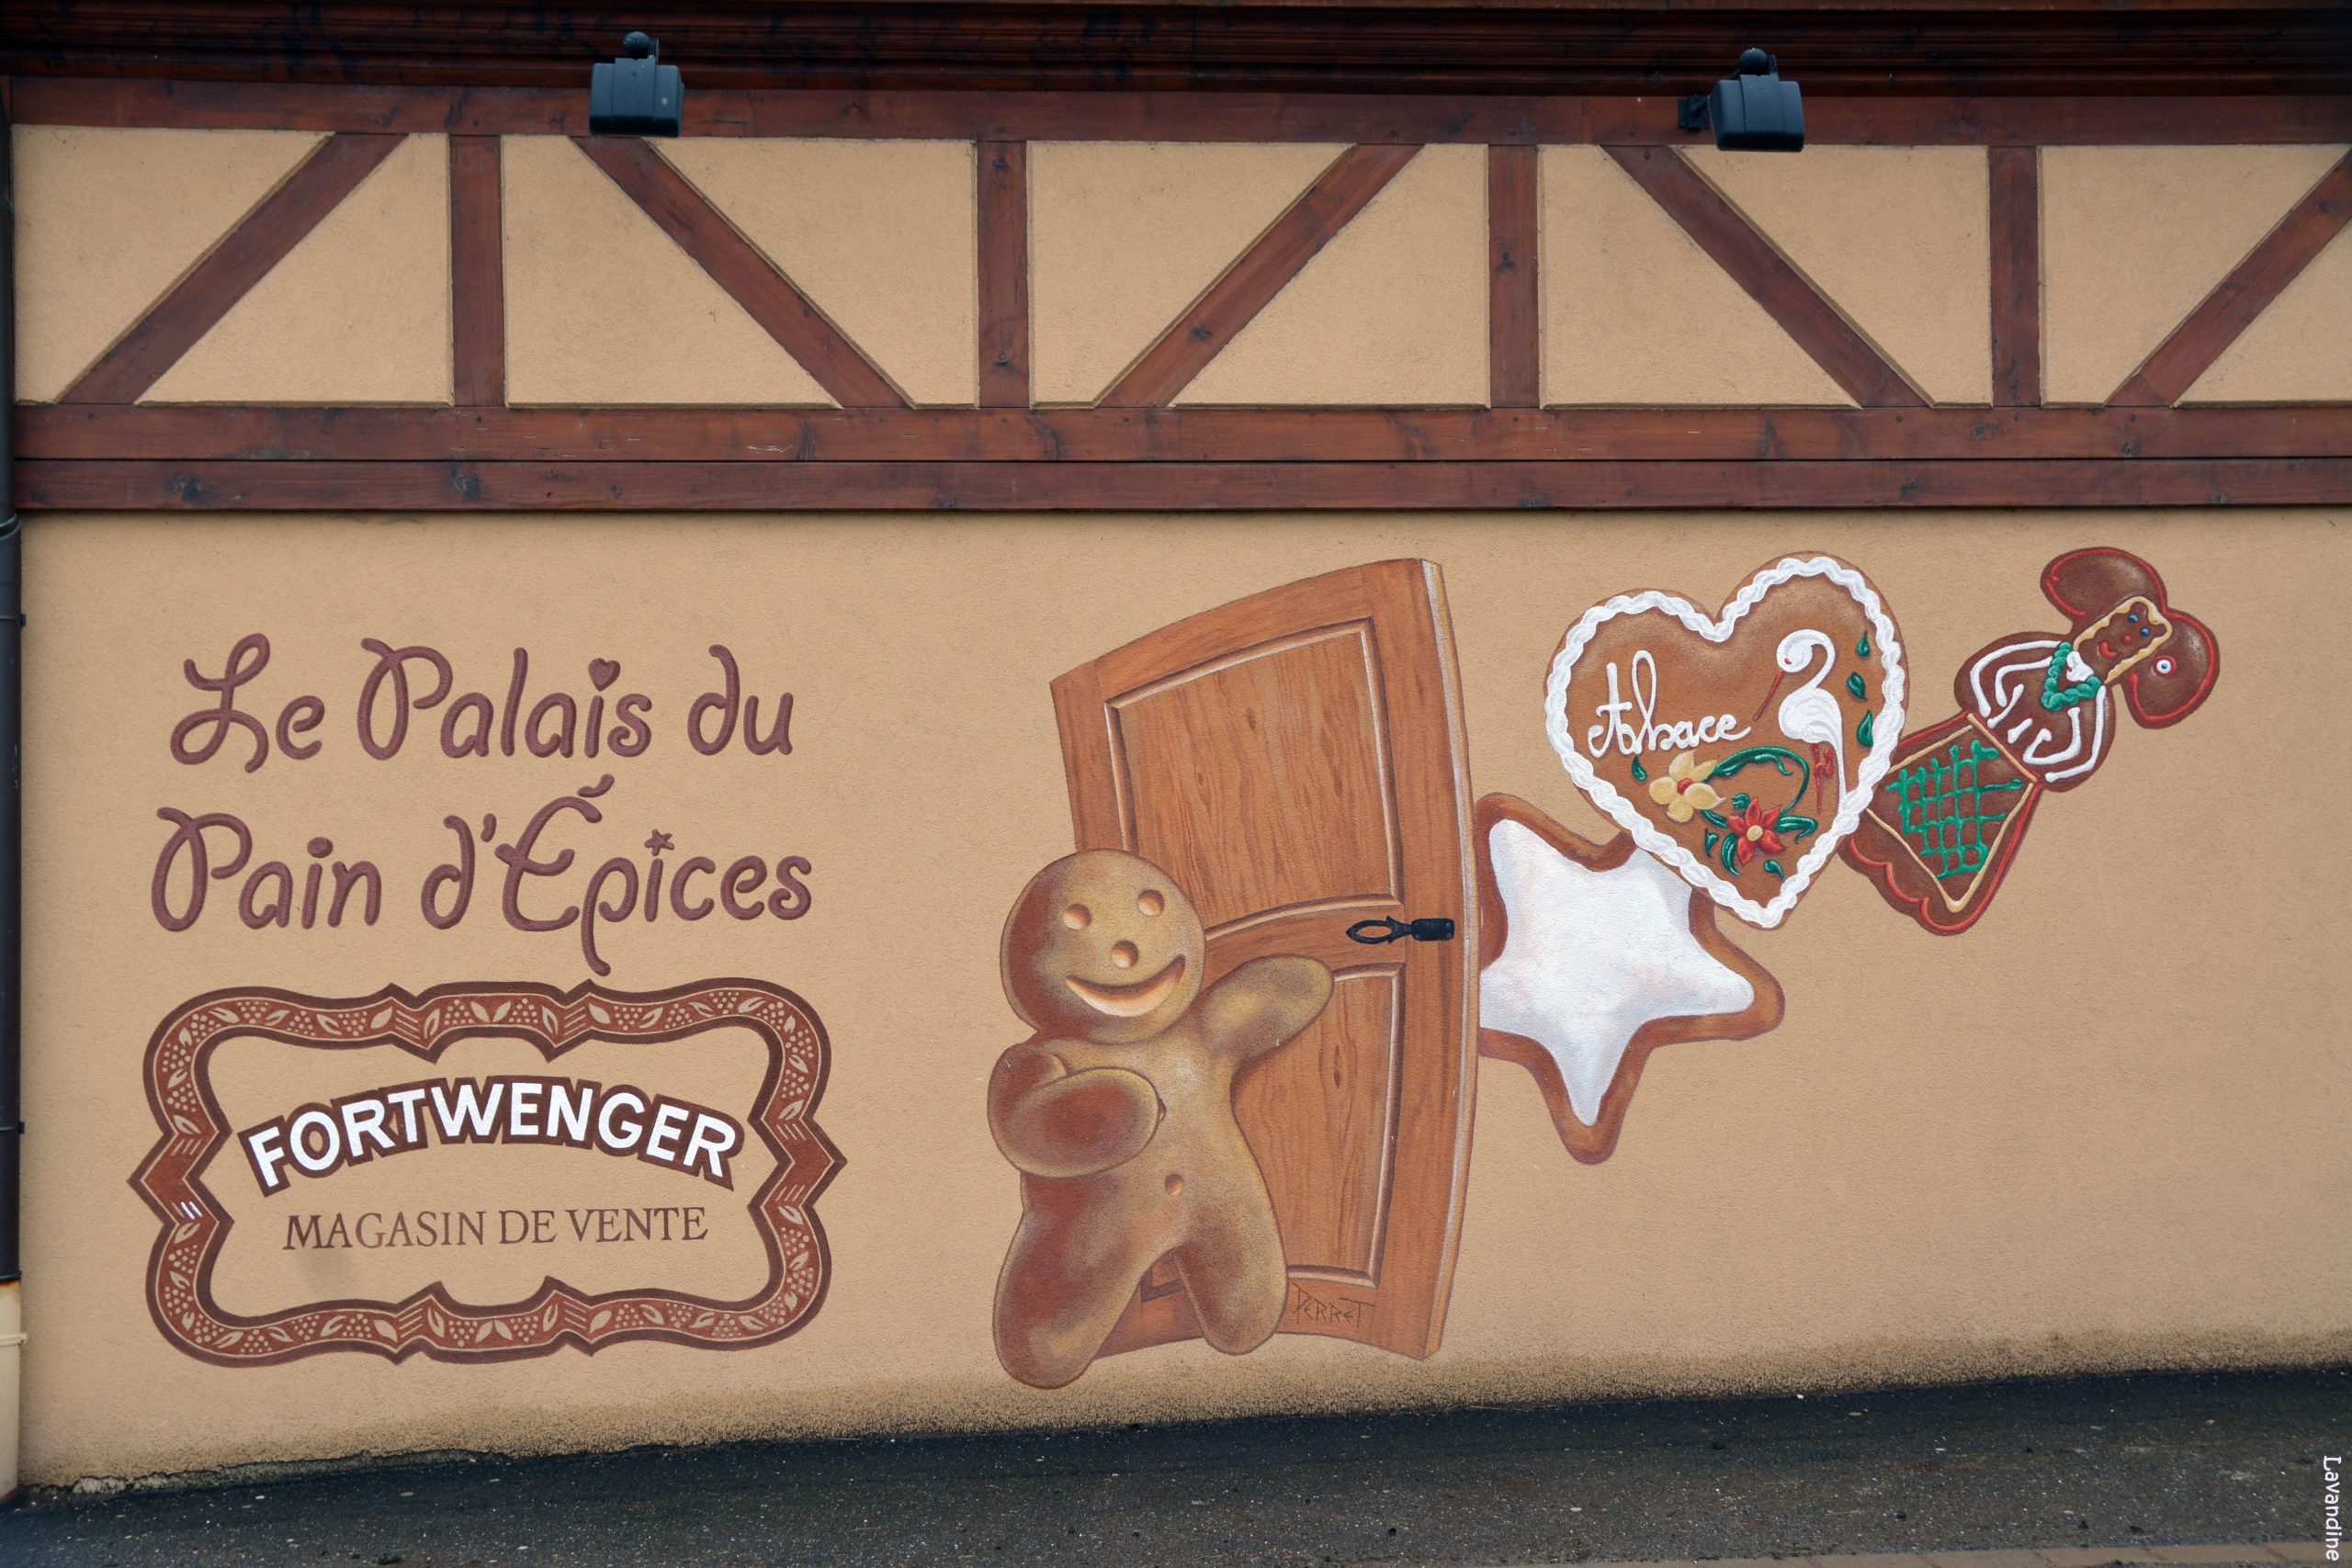 La Palais du pain d'épices à Gertwiller fête ses 10 ans